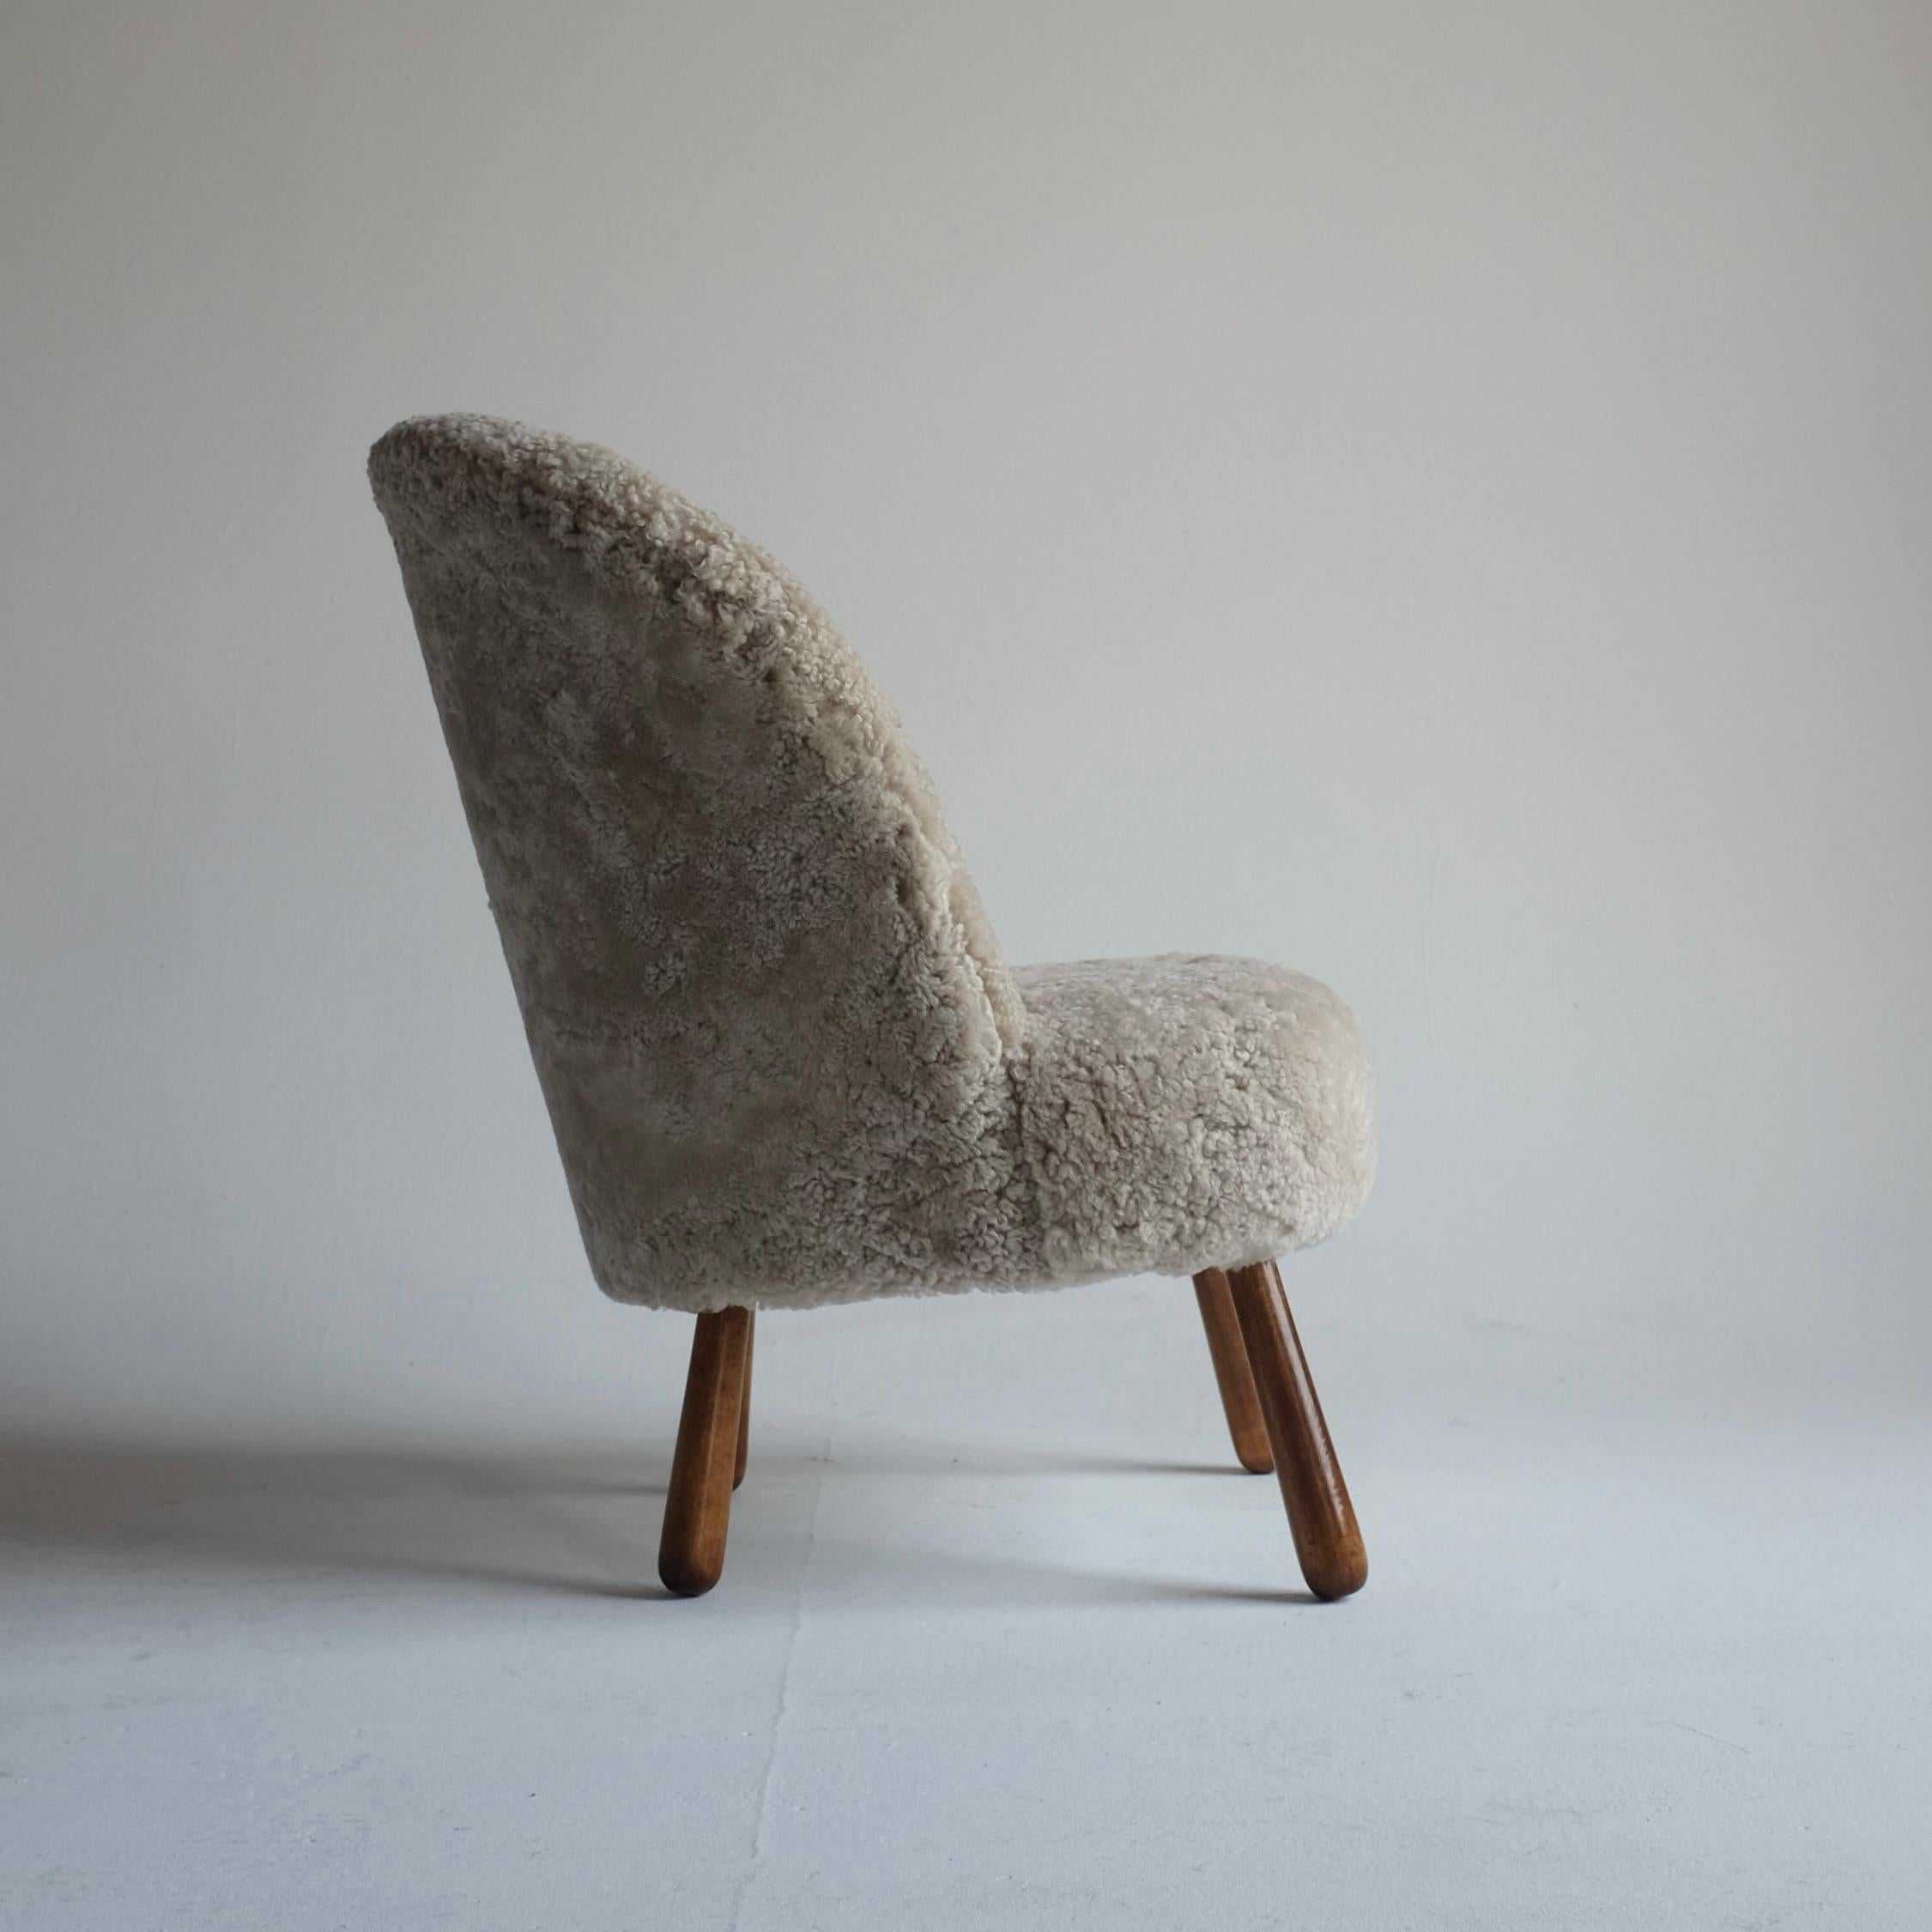 Chaise d'appoint suédoise moderne, nouvellement recouverte de peau de mouton de haute qualité par Scandilock. Cette chaise date probablement des années 1940 et a été réalisée par un designer inconnu. Elle est dans le style de la célèbre chaise Clam